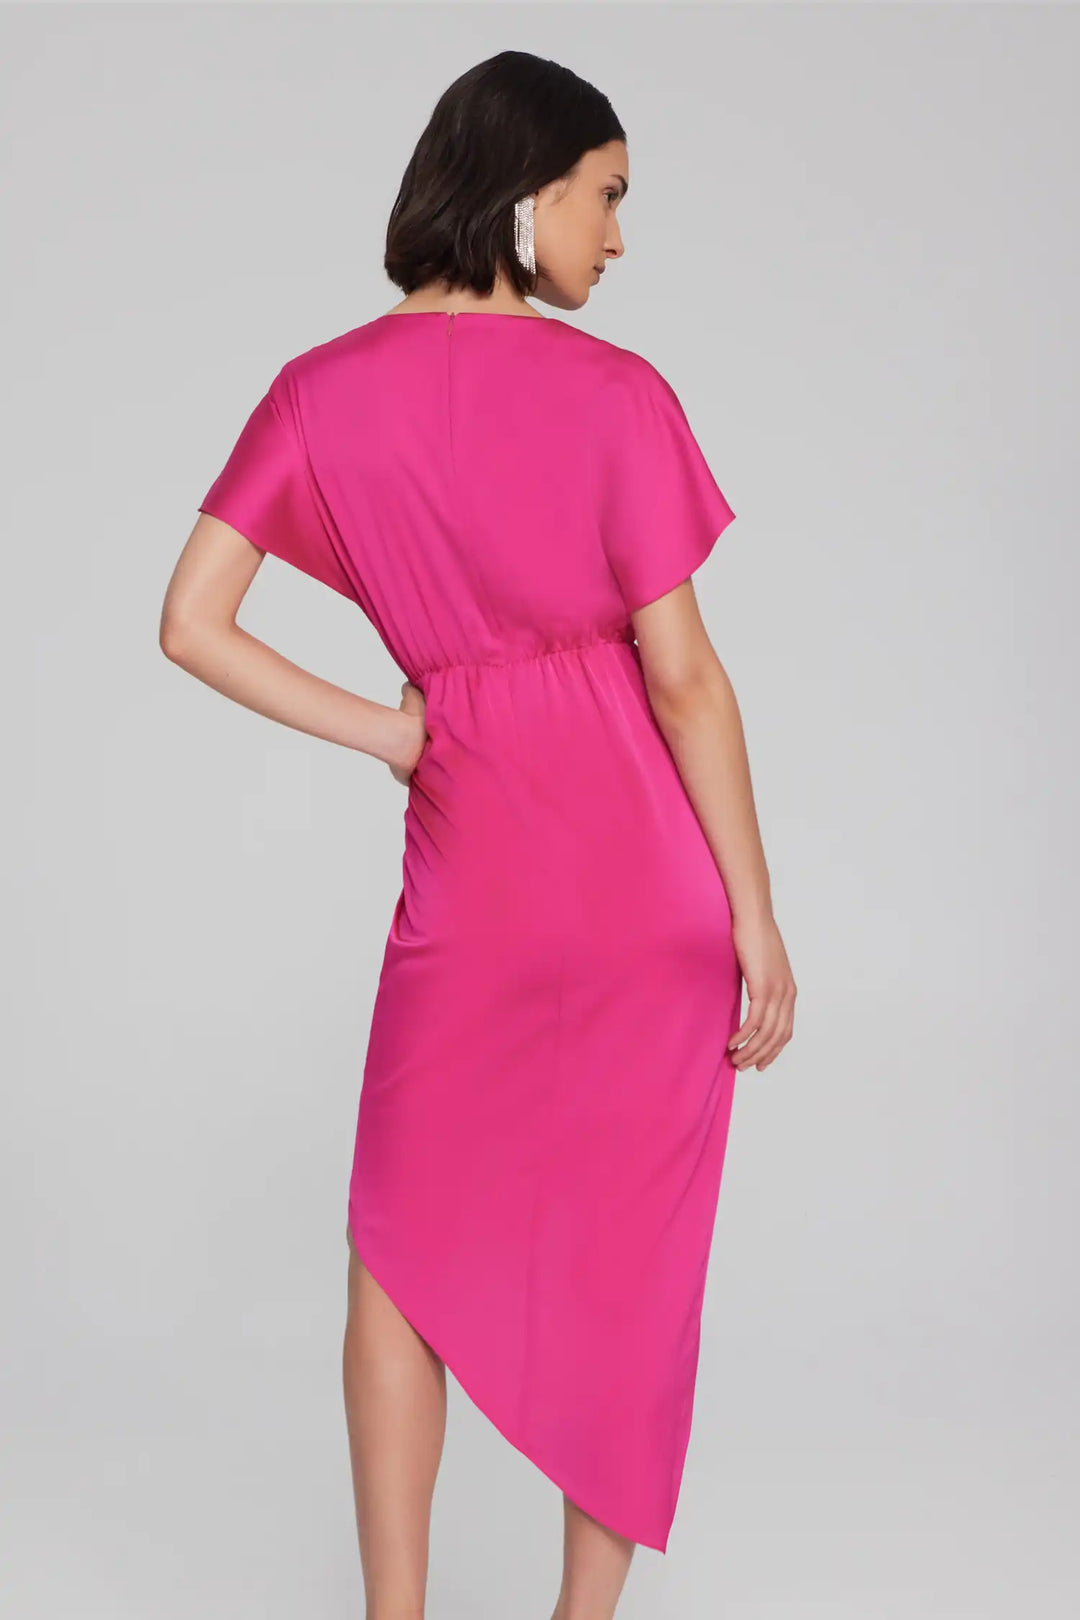 Joseph Ribkoff Shocking Pink Dress Style 241777-4129